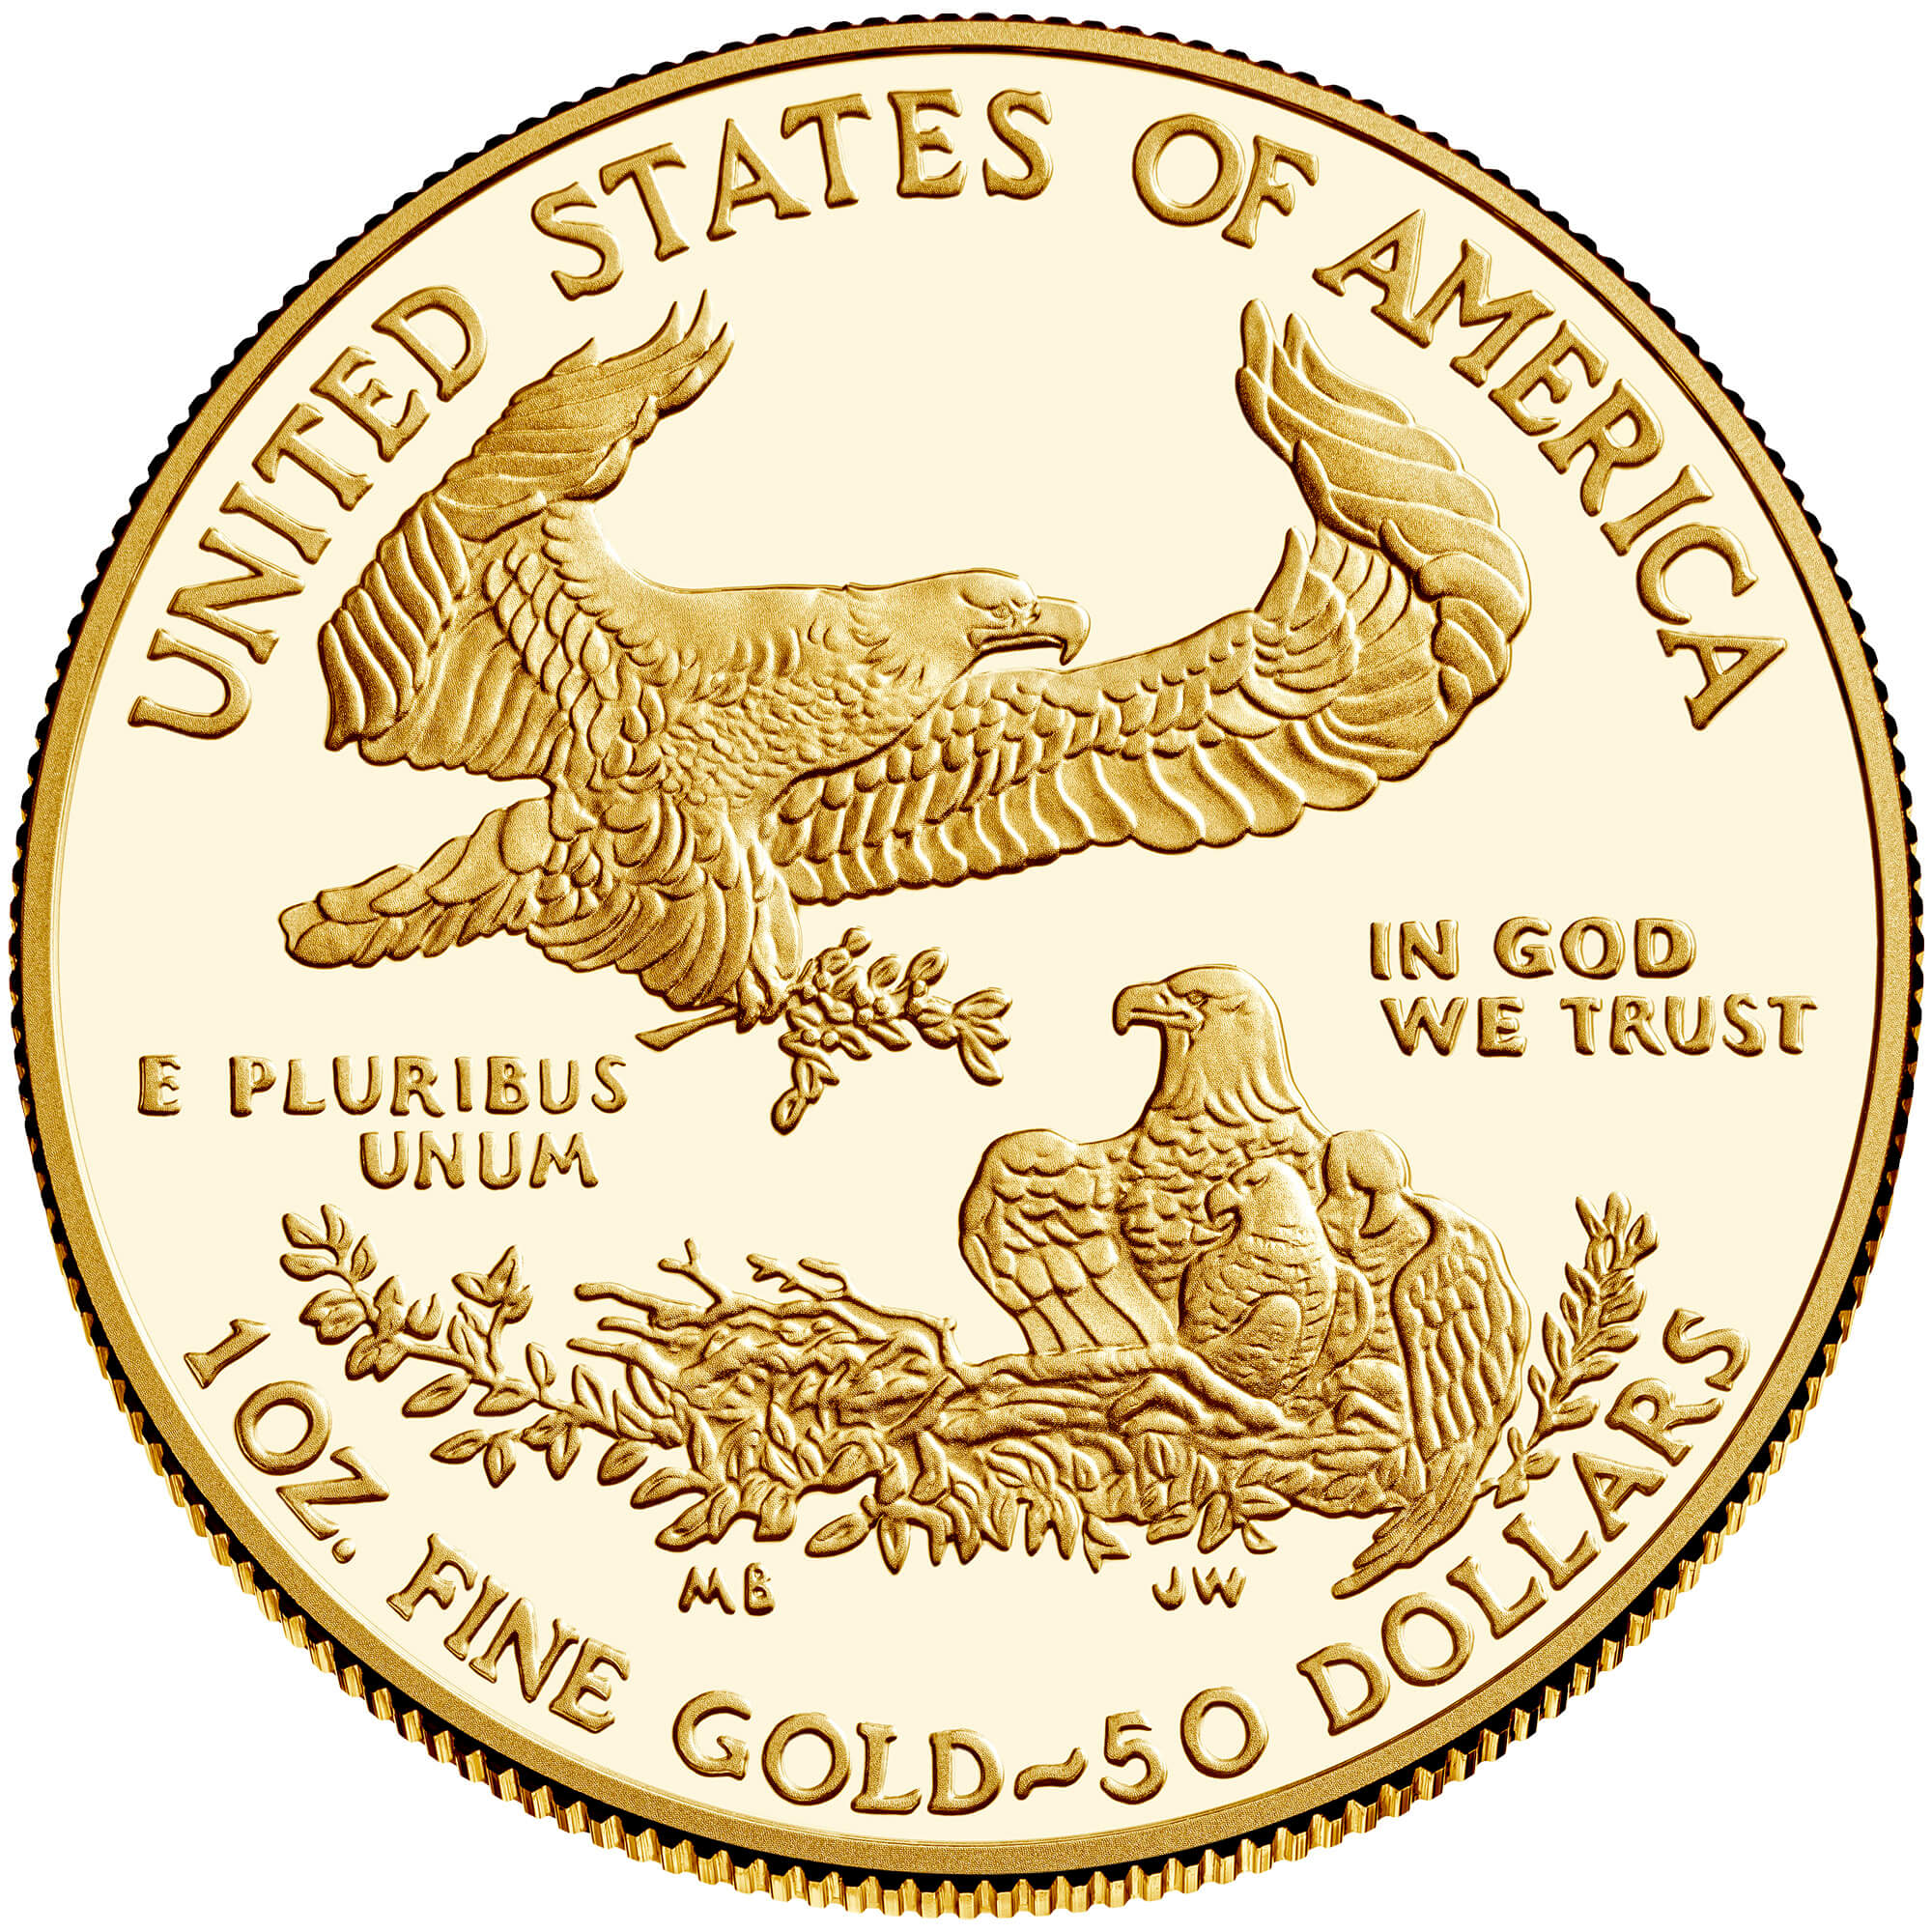 US 50 Dollars 2005 W